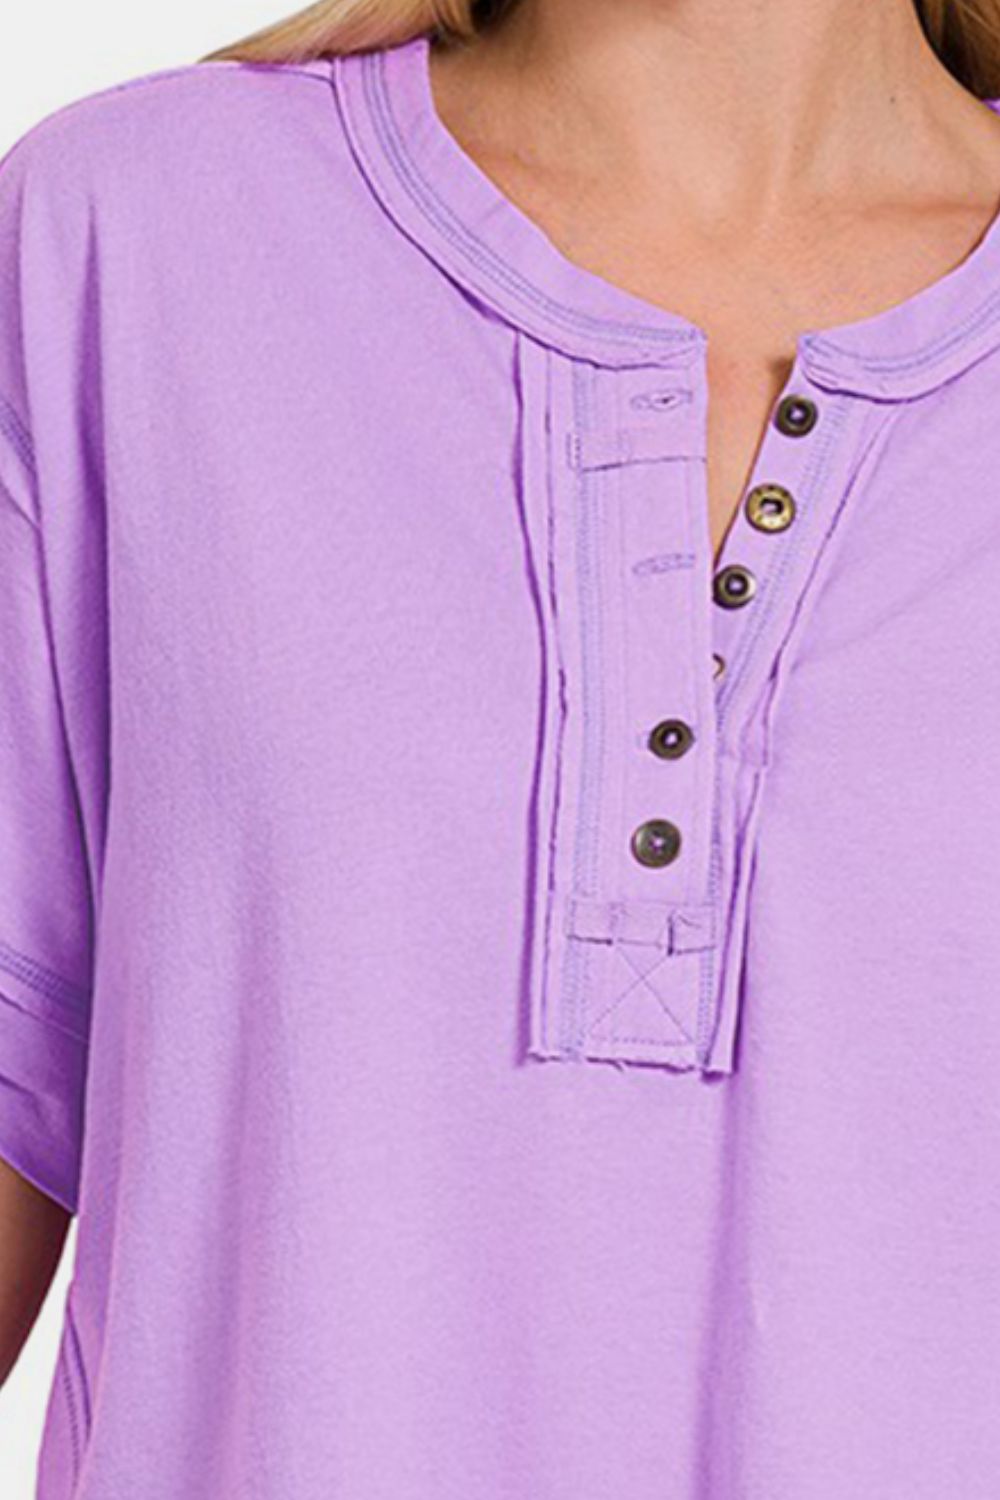 Zenana Exposed Seam Half Button Short Sleeve Top | us.meeeshop